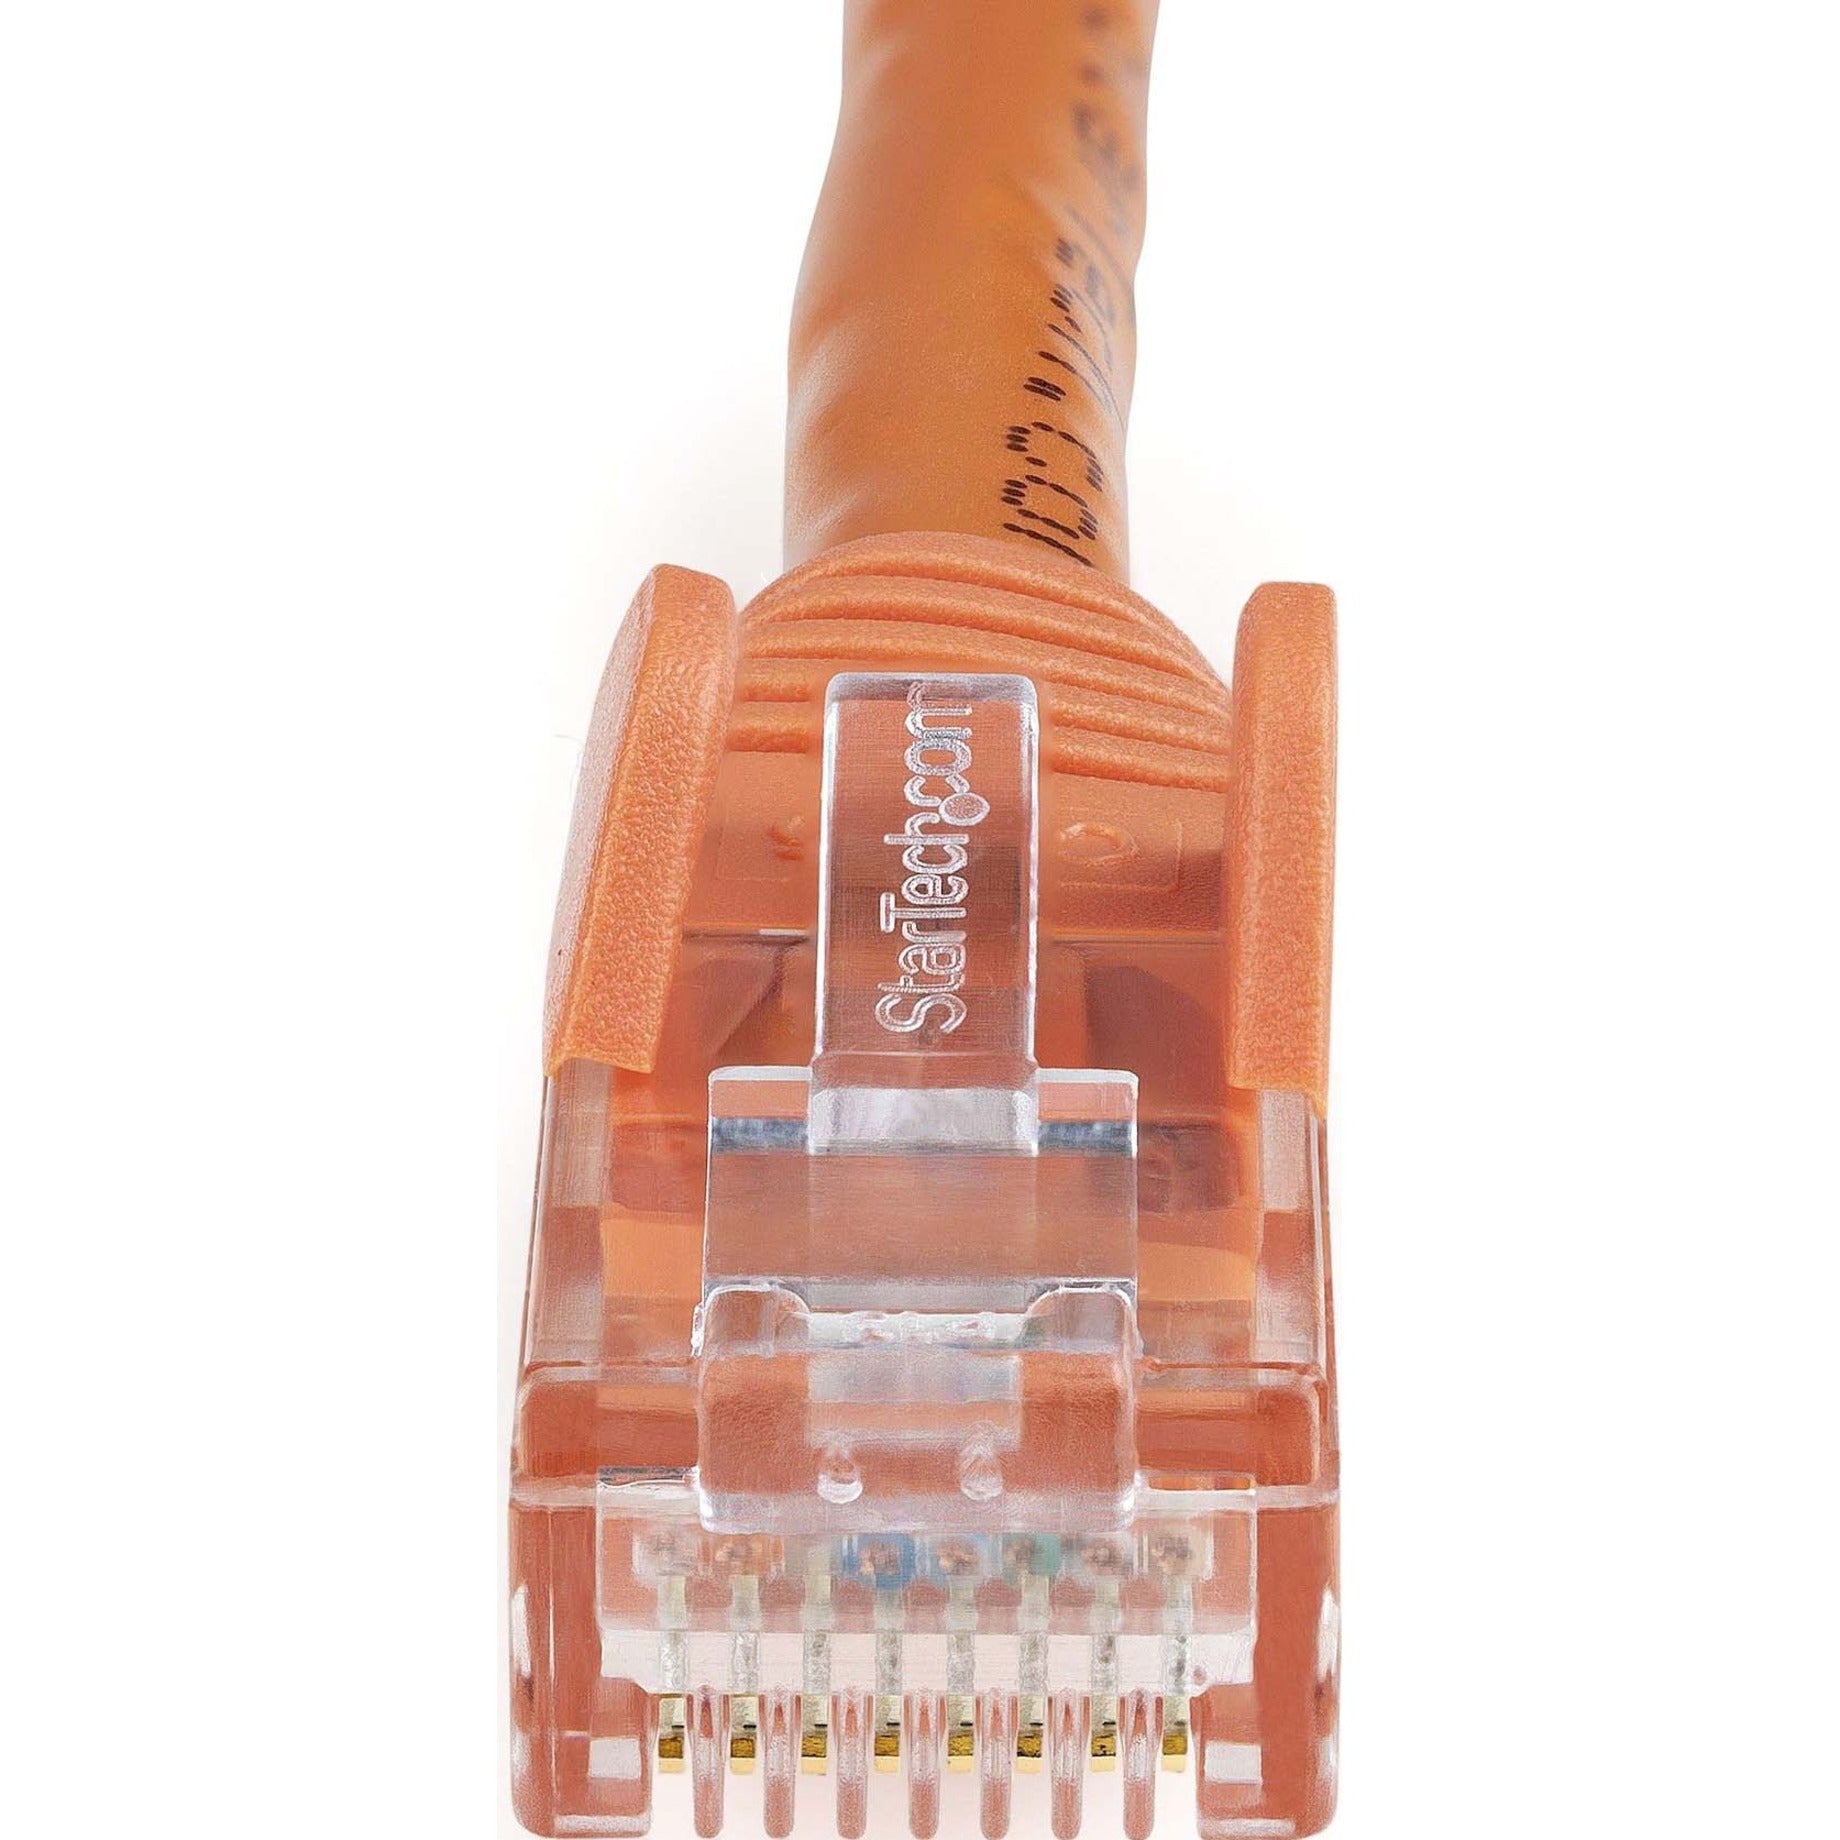 StarTech.com N6PATCH5OR Cat6 Patch Kabel 5ft Orange Ethernet Kabel Snagless RJ45 Steckverbinder